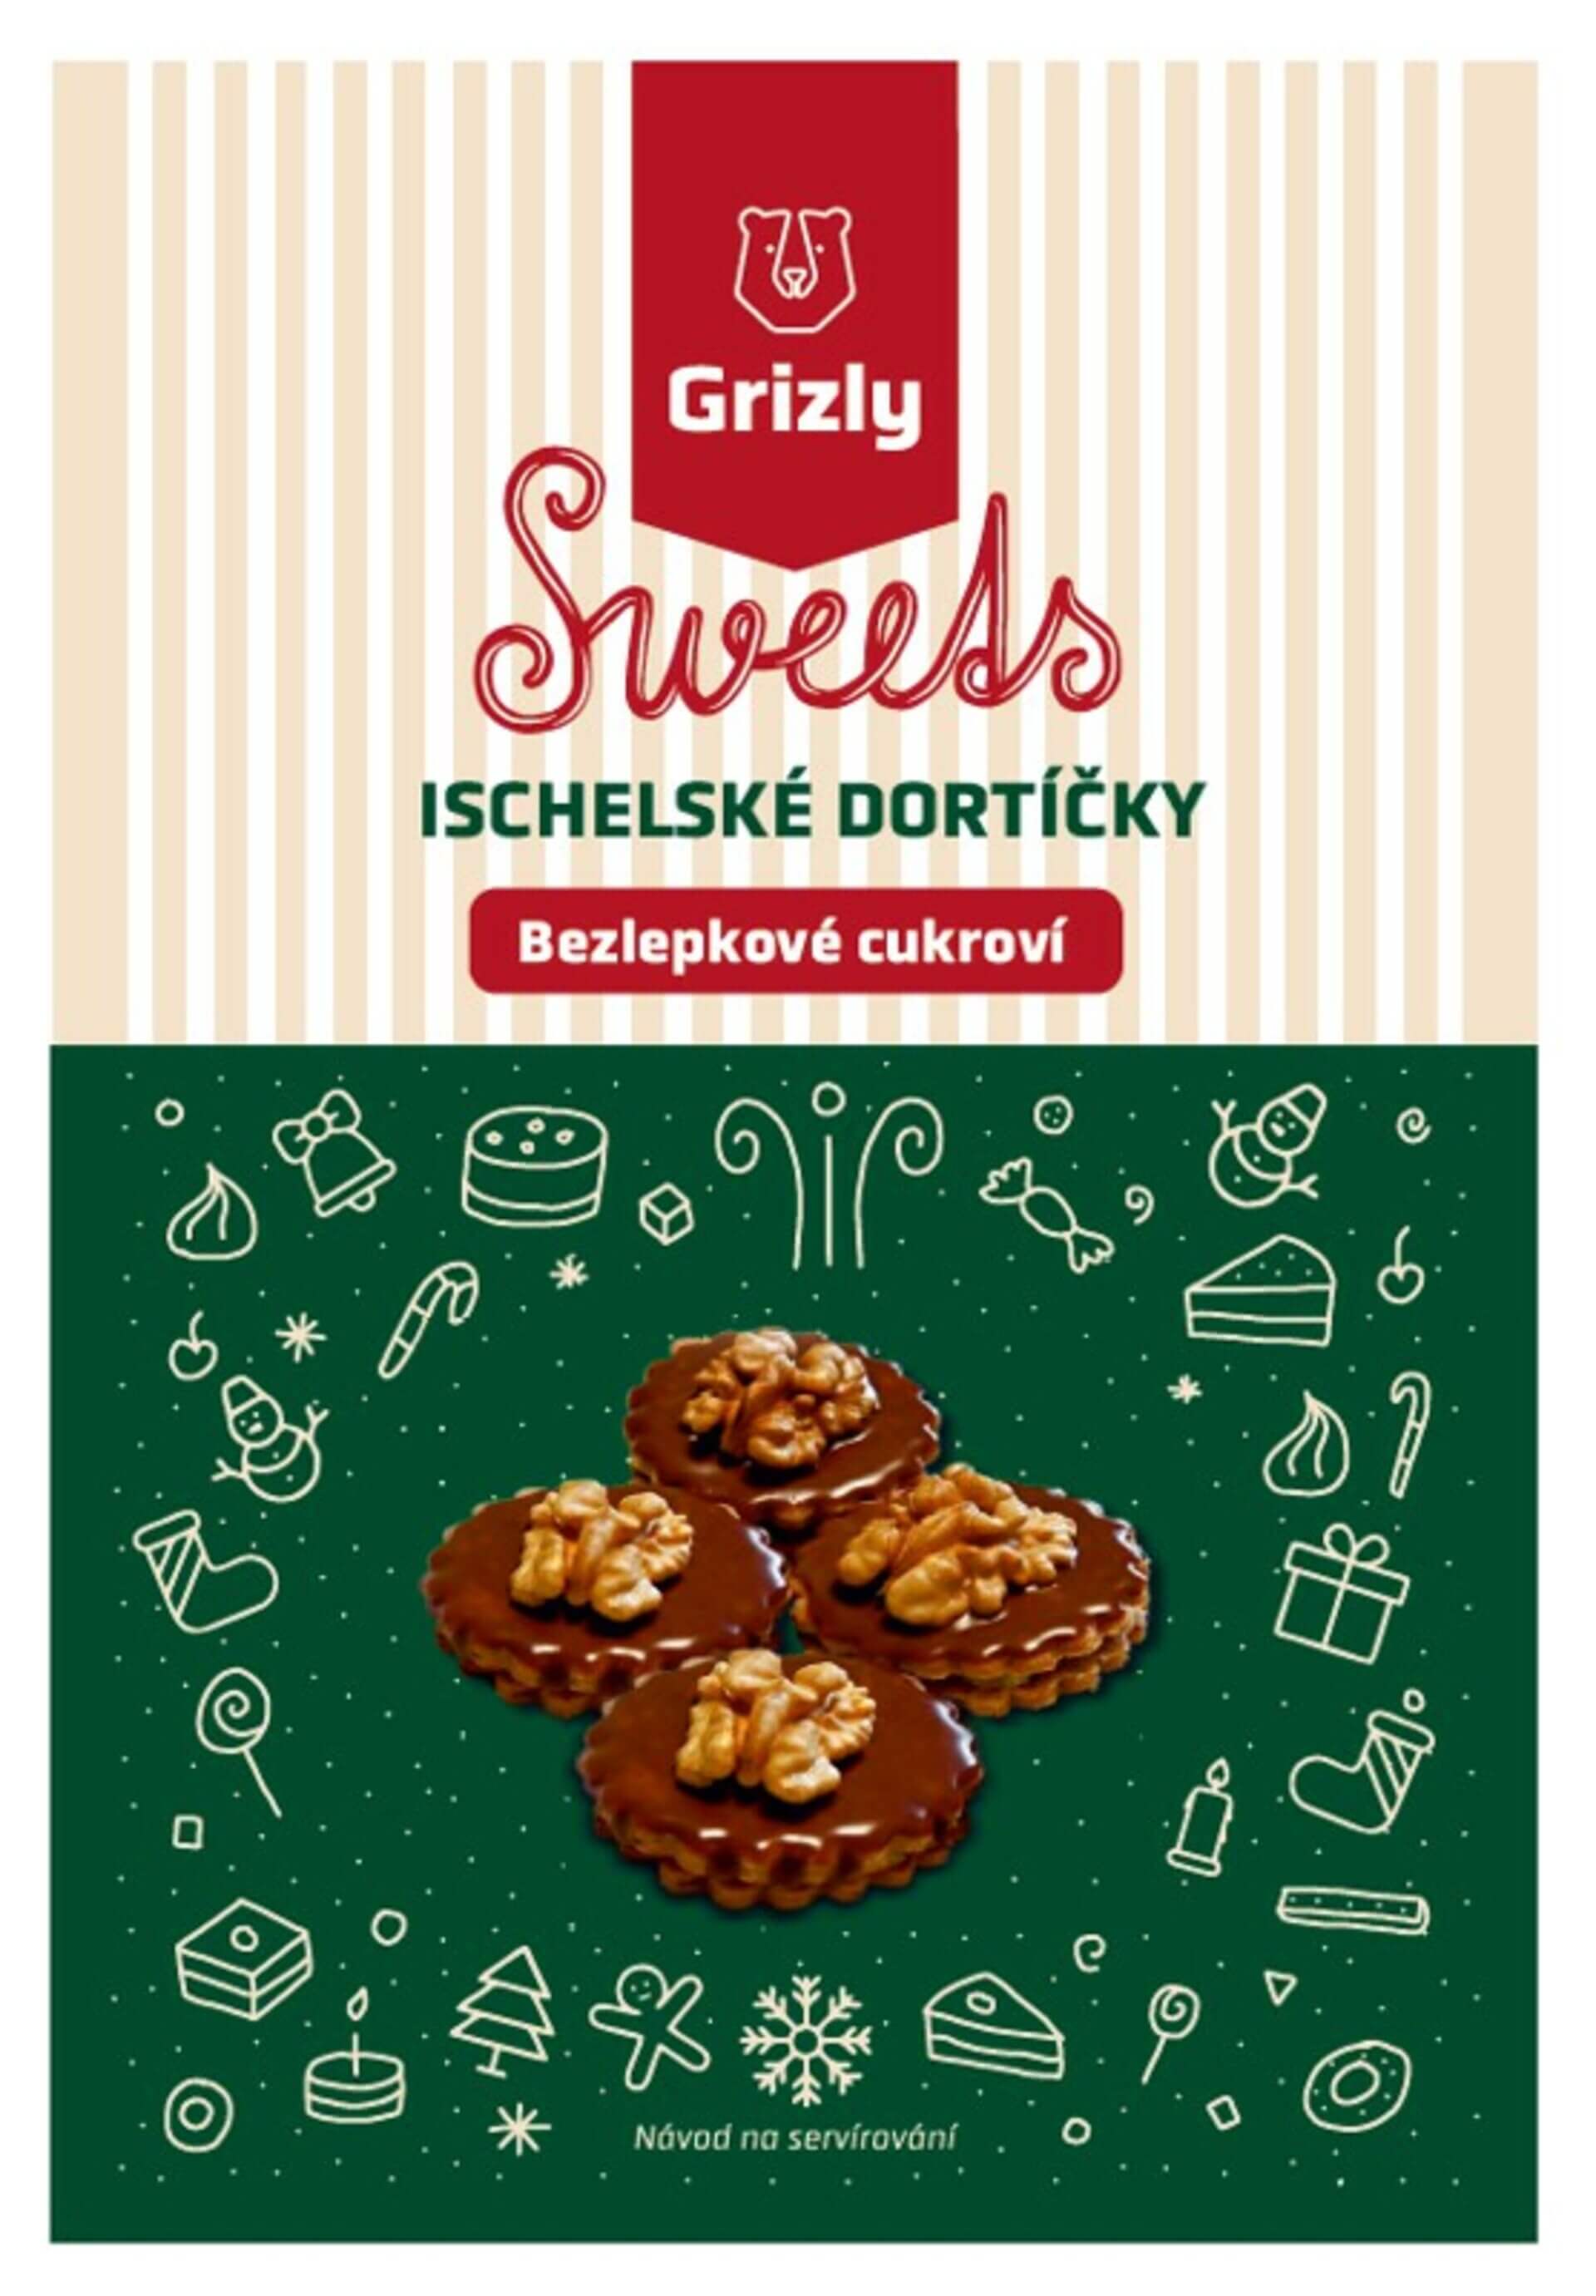 E-shop GRIZLY Sweets Zmes na ischelské tortičky bezlepkové 340 g